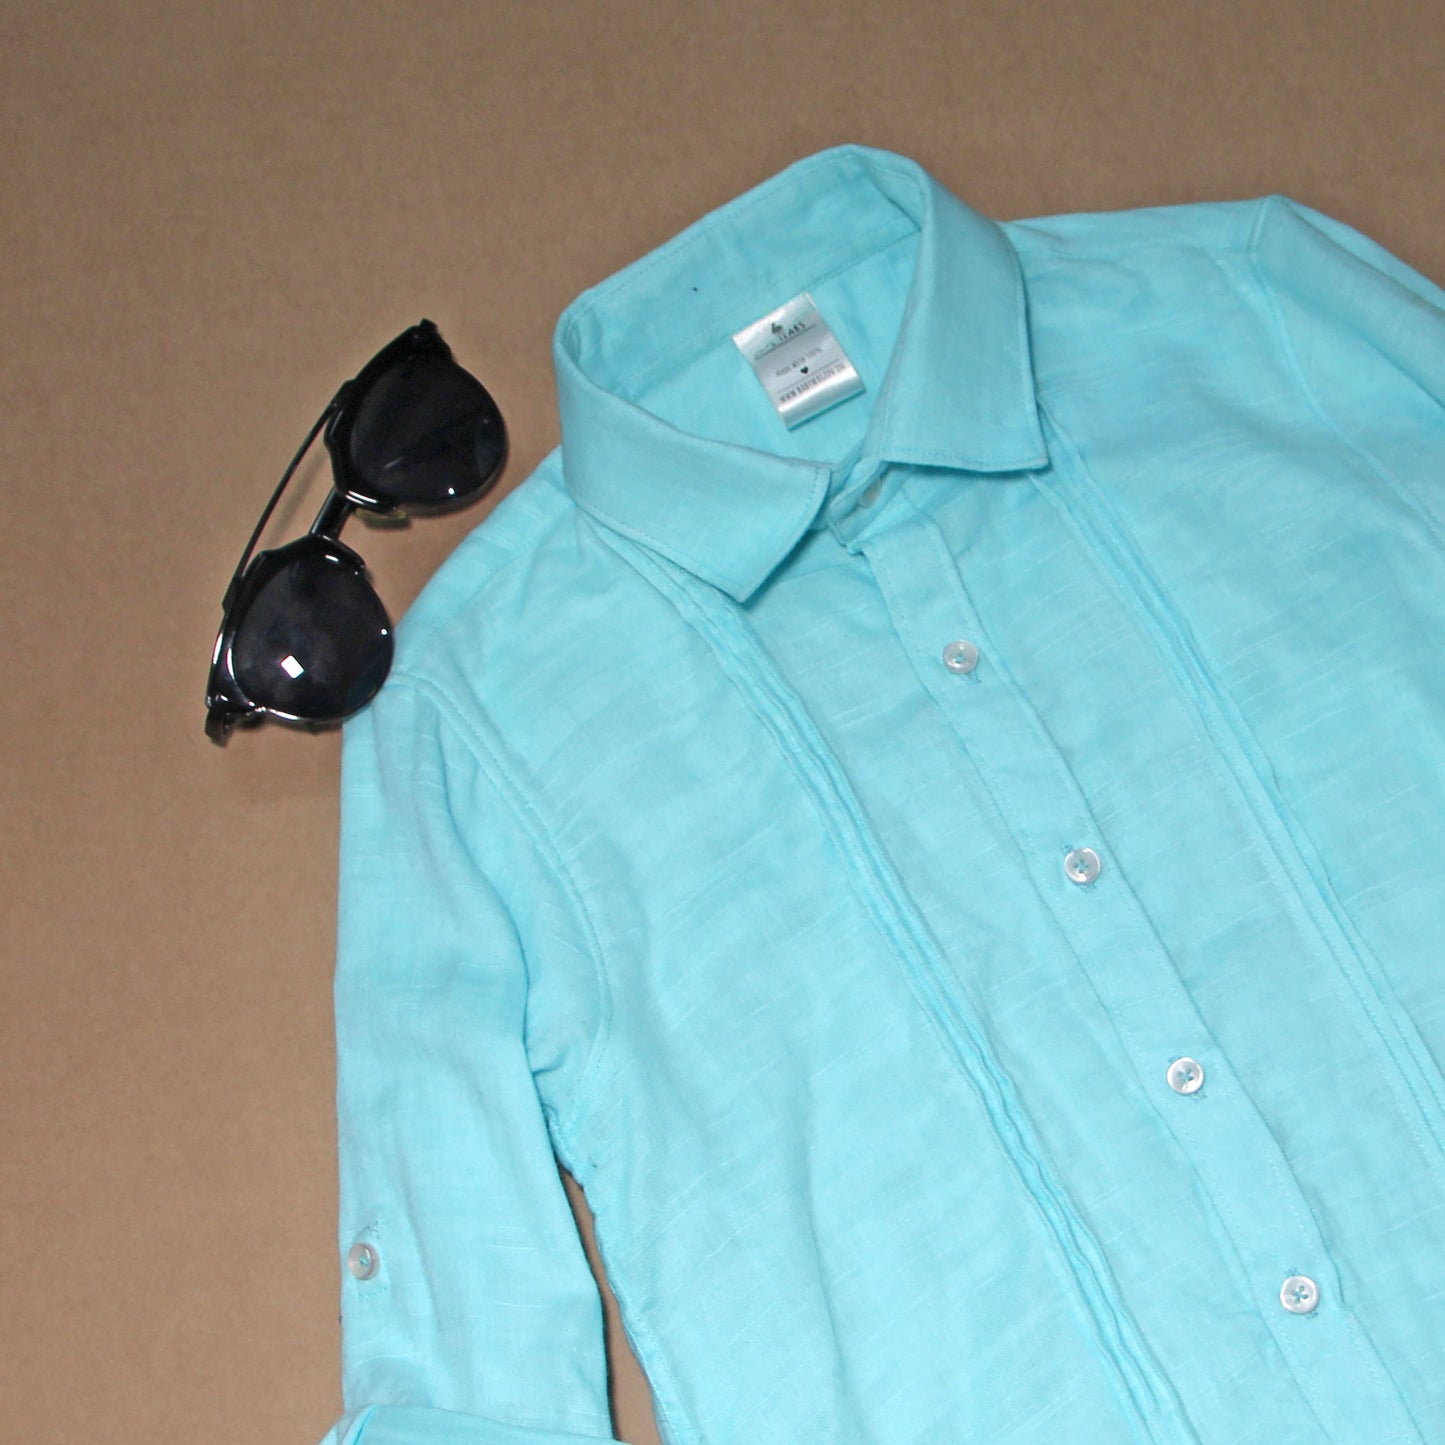 Aqua Blue Pintex Cotton Shirt